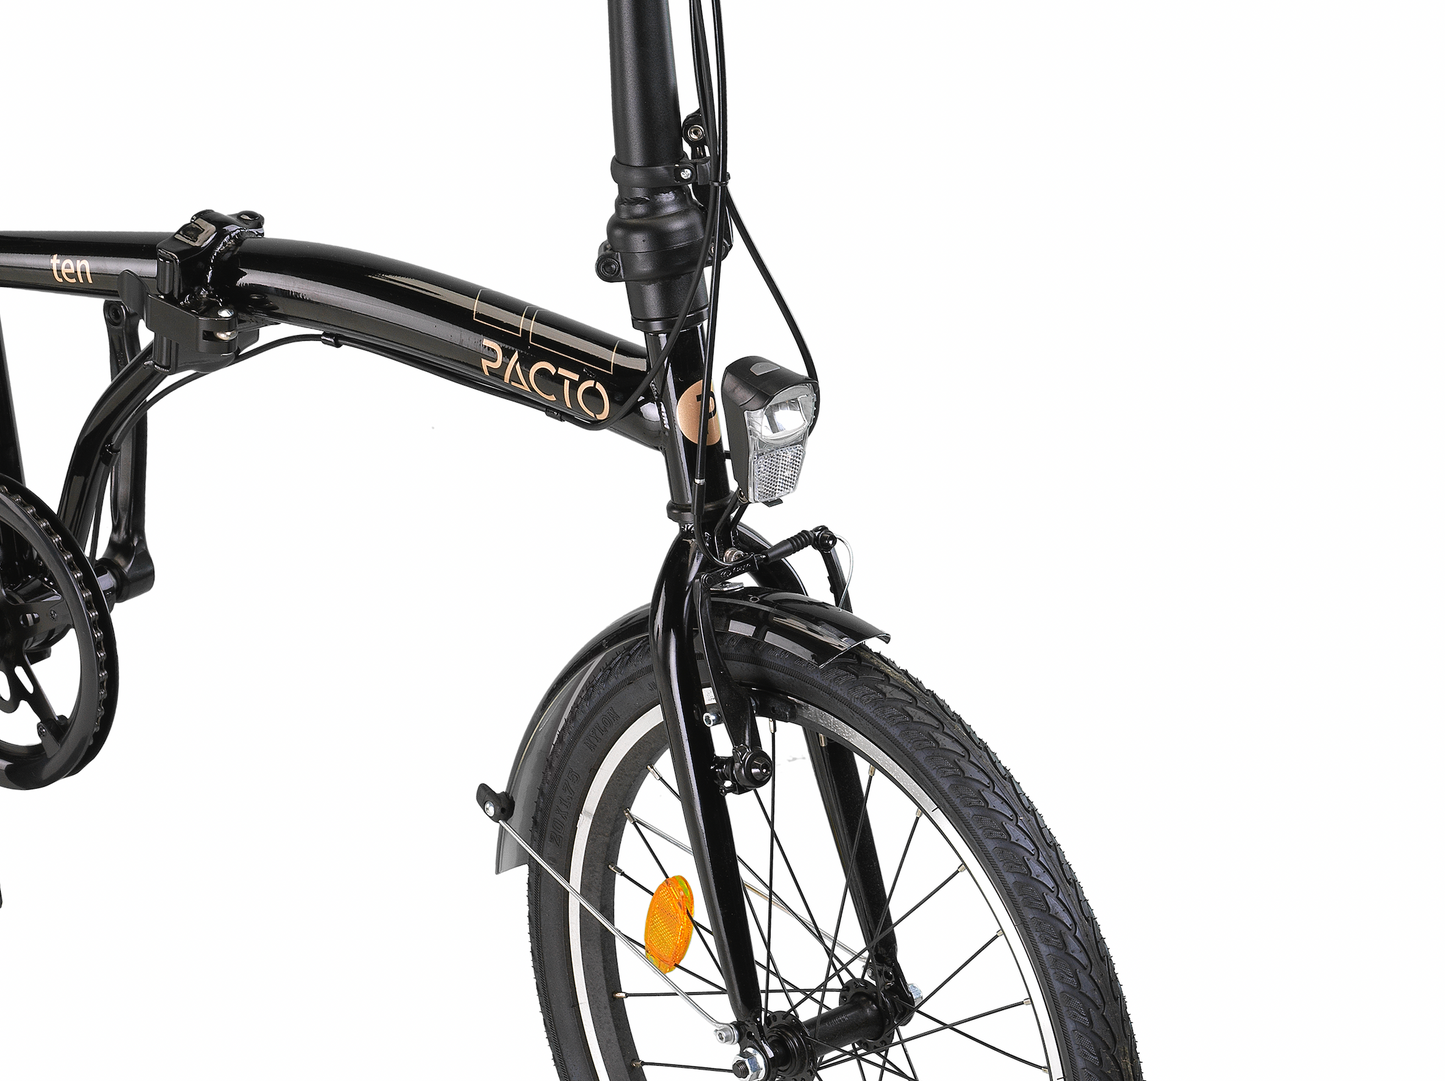 PACTO - TEN - FOLDING BIKE - MINT/ BLACK - vouwfiets - opklapfiets - folding bike - pacto -pactobike.com